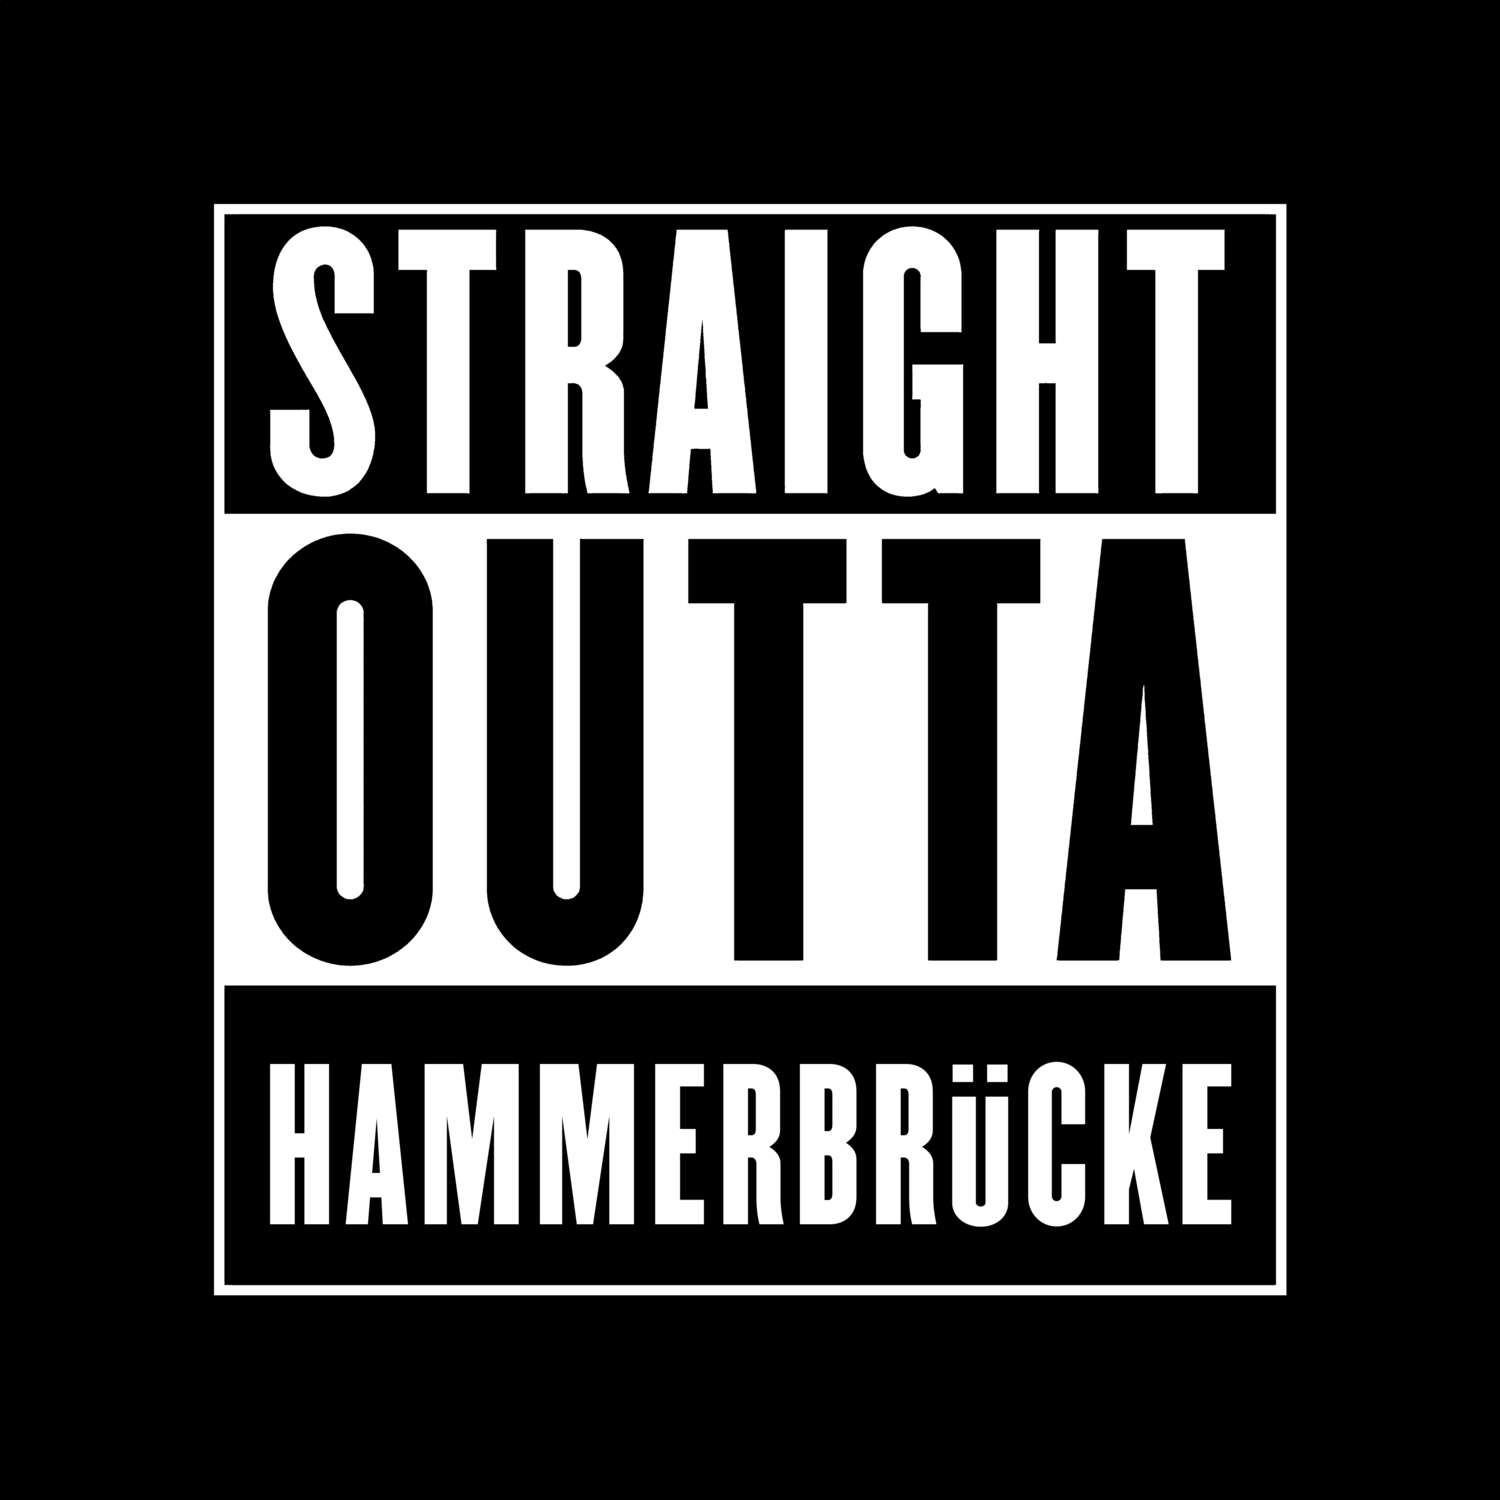 Hammerbrücke T-Shirt »Straight Outta«